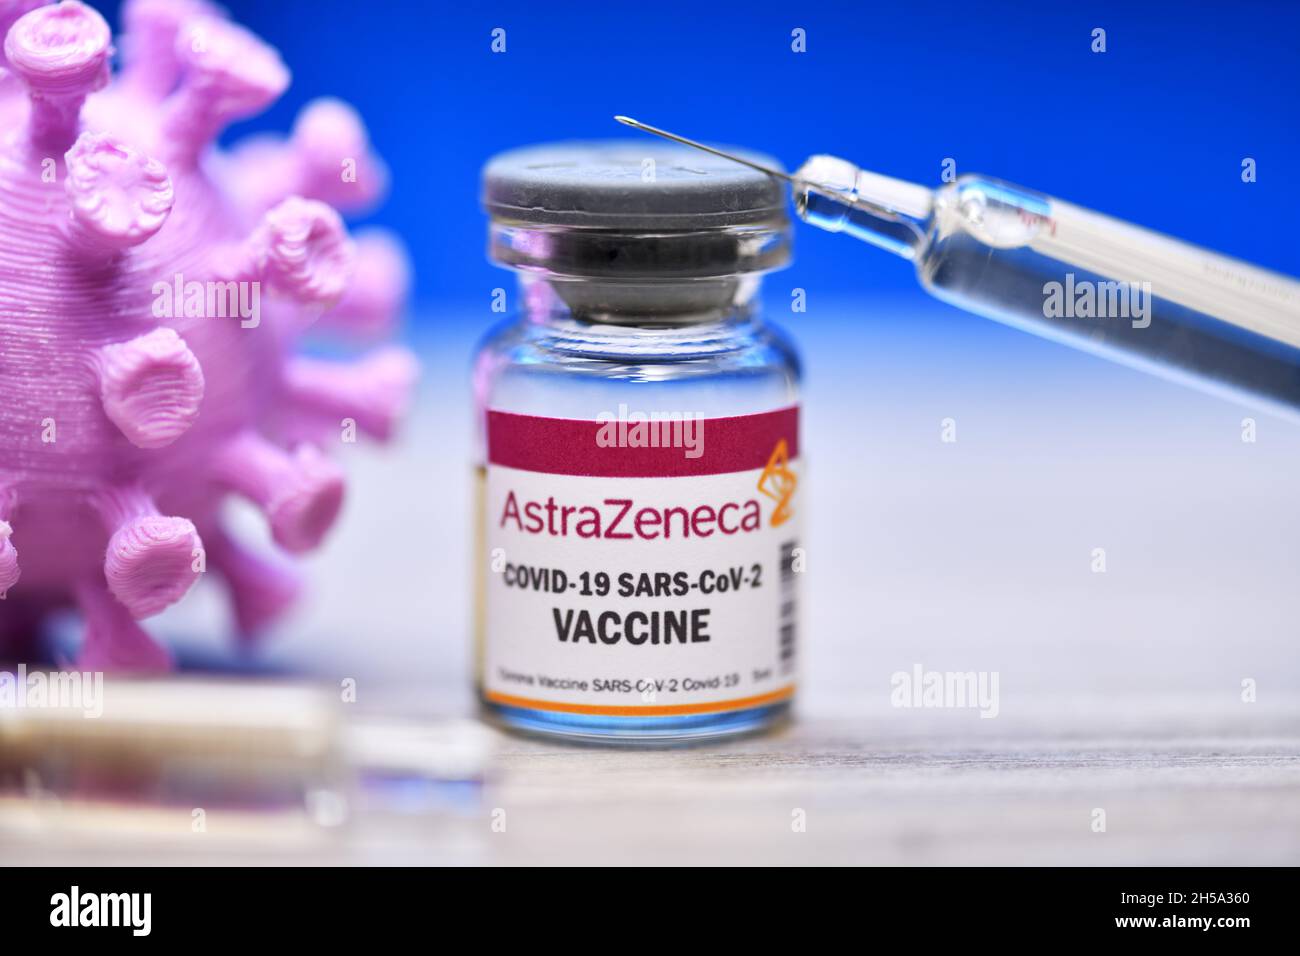 Injektionsflasche mit Impfspritze und Coronavirus-Modell, Corona-Impfstoff von AstraZeneca, Symbolfoto Stock Photo